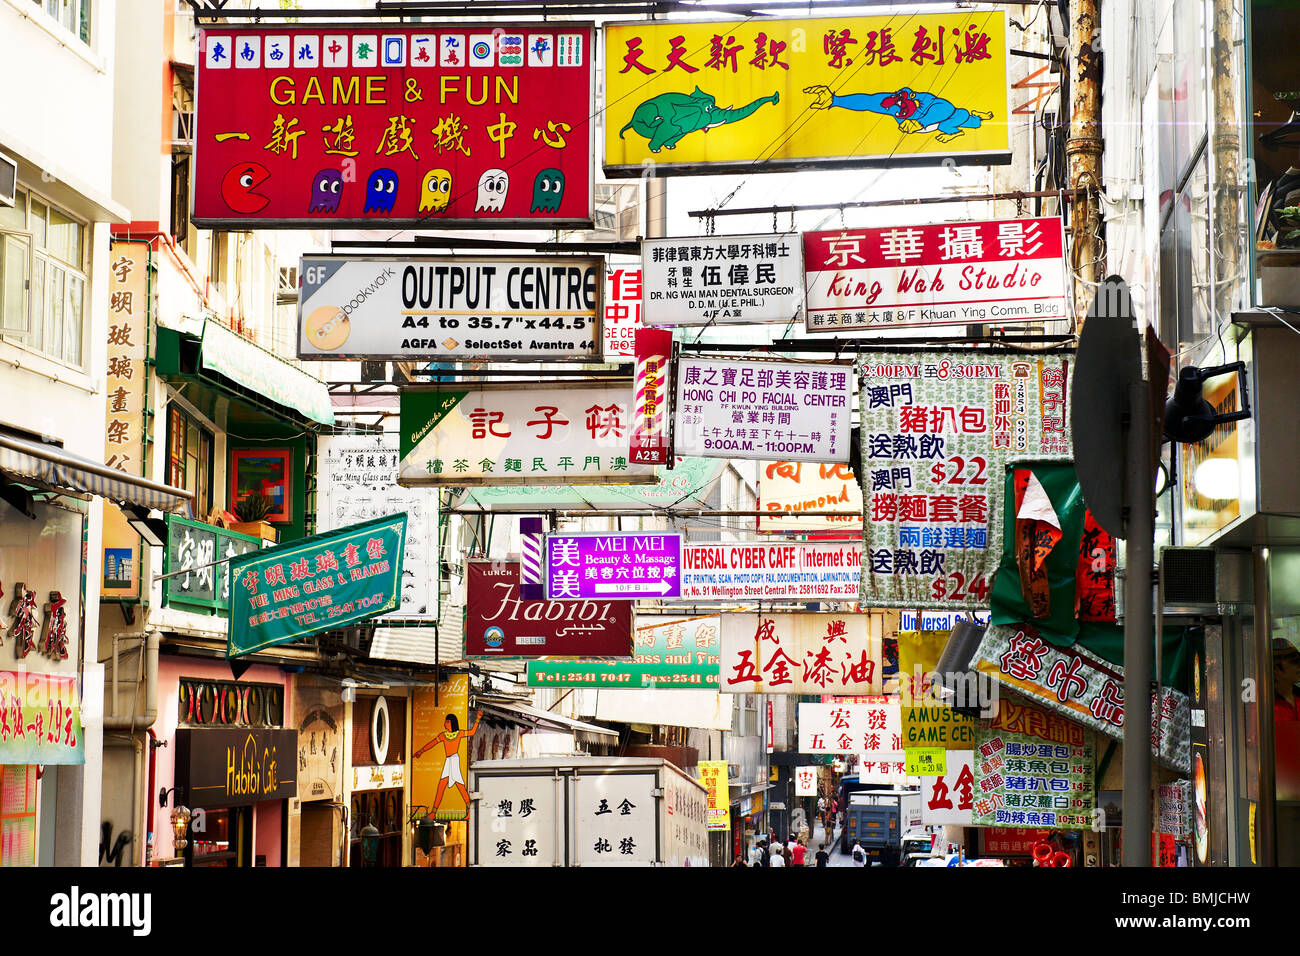 Une rue de Hong Kong est rempli de bannières publicitaires ci-dessus, couvrant entièrement le ciel. Le commerce est omniprésent. Banque D'Images